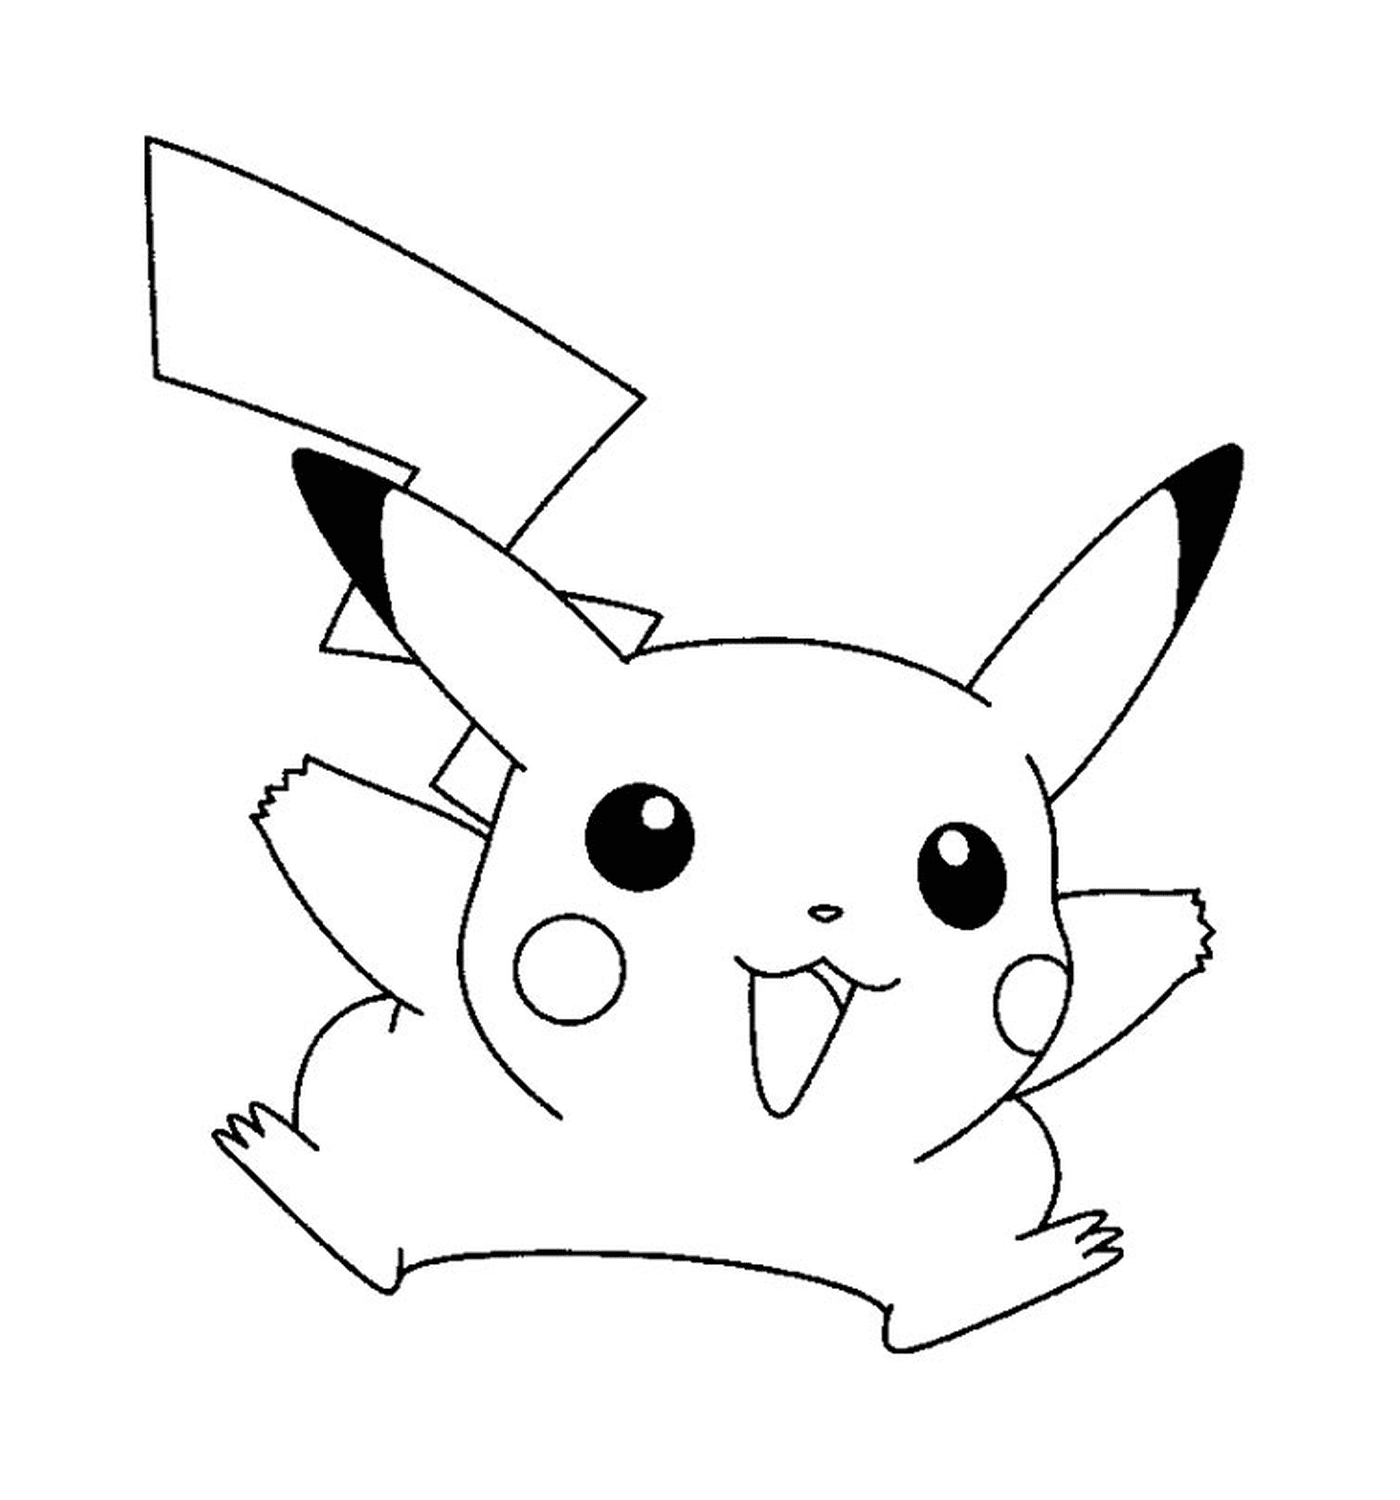  Pikachu lindo y fácil de dibujar 